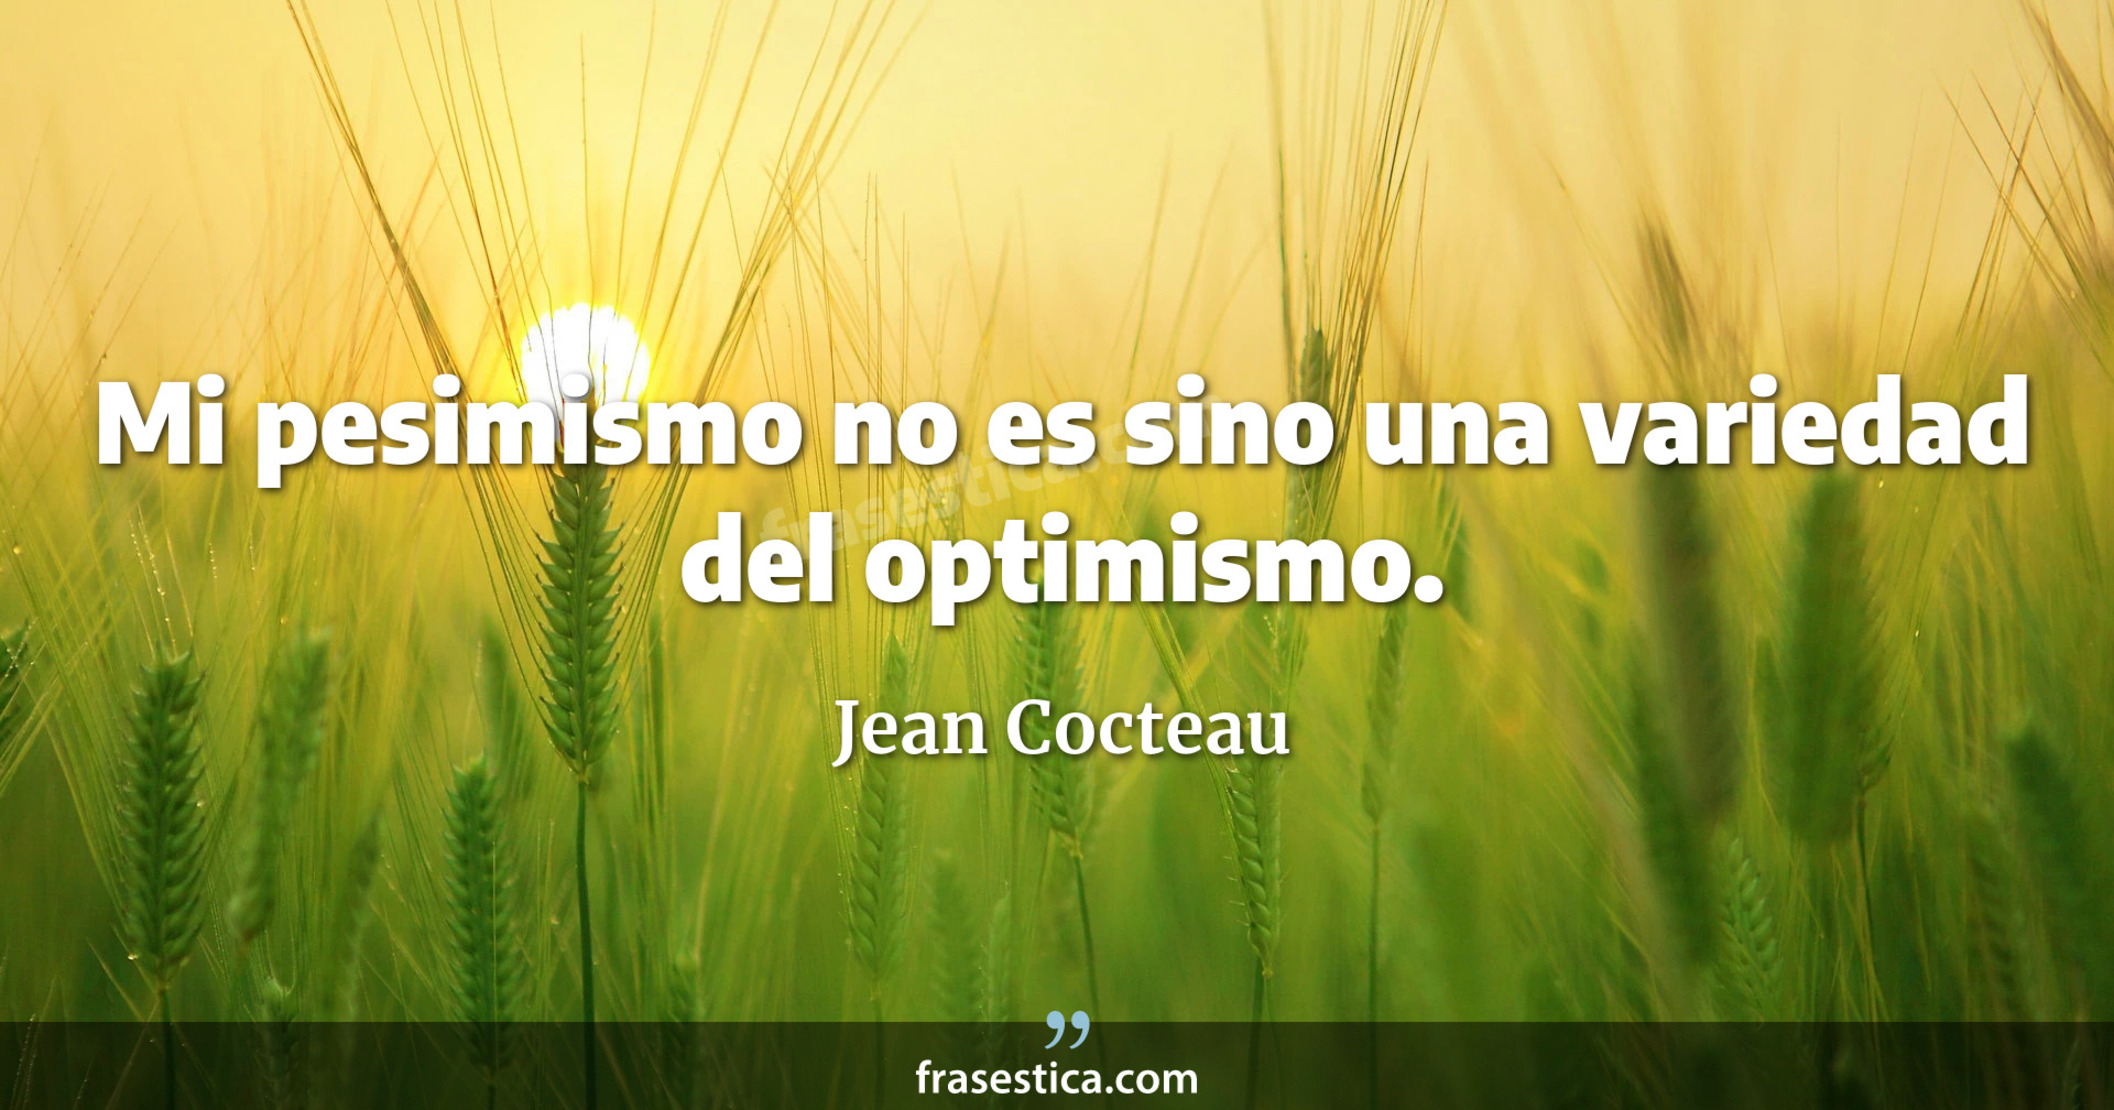 Mi pesimismo no es sino una variedad del optimismo. - Jean Cocteau